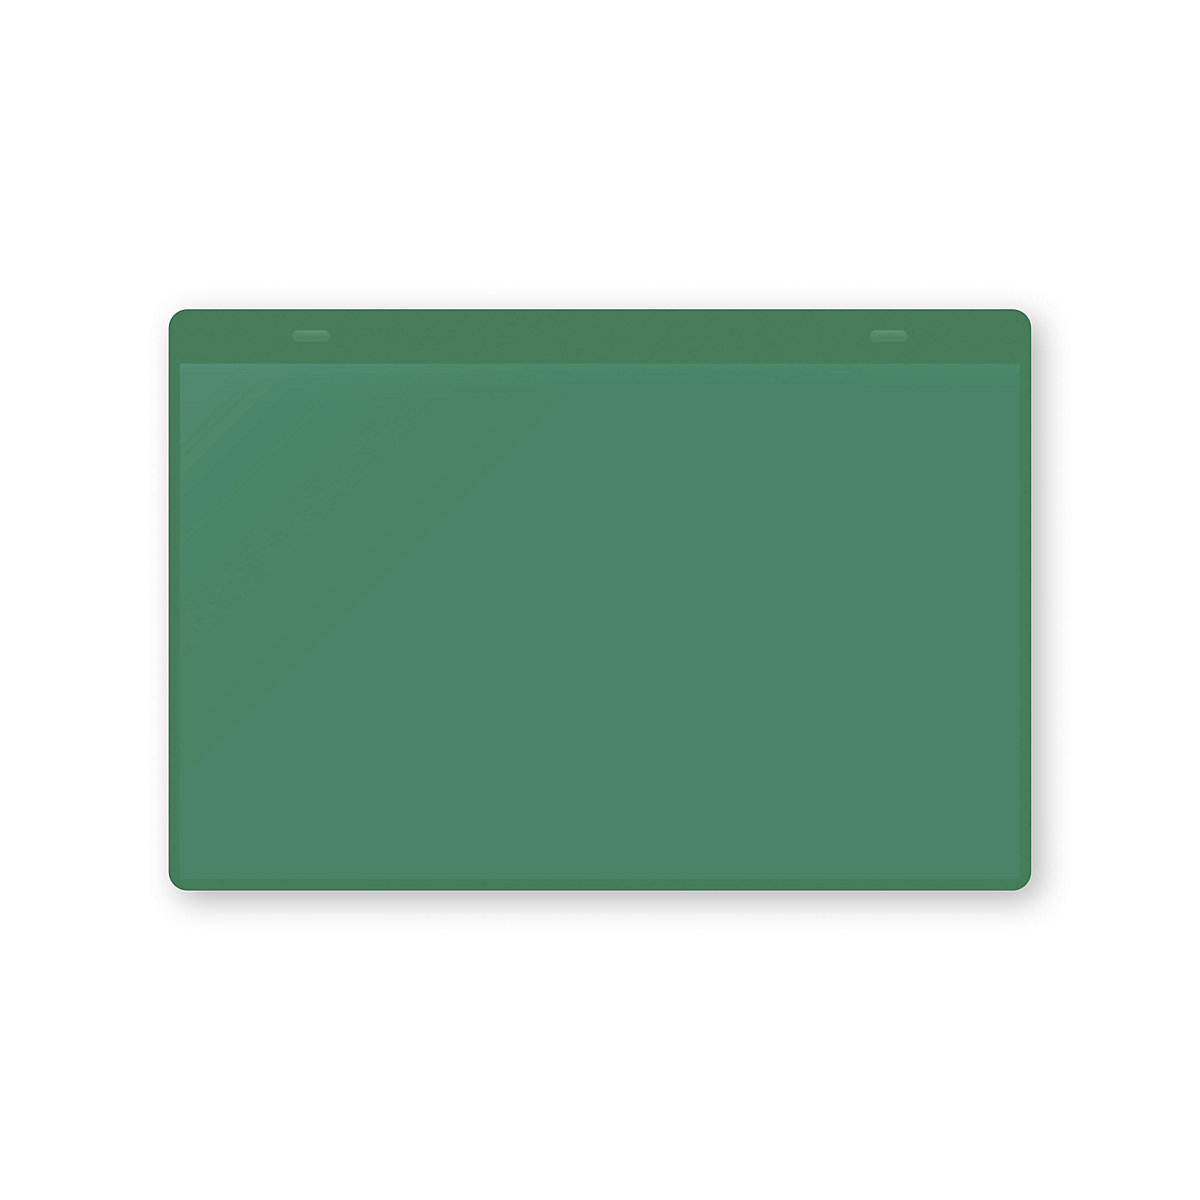 Pochettes porte-documents avec languettes d'accrochage, format A5 à l'horizontale, lot de 10, vert